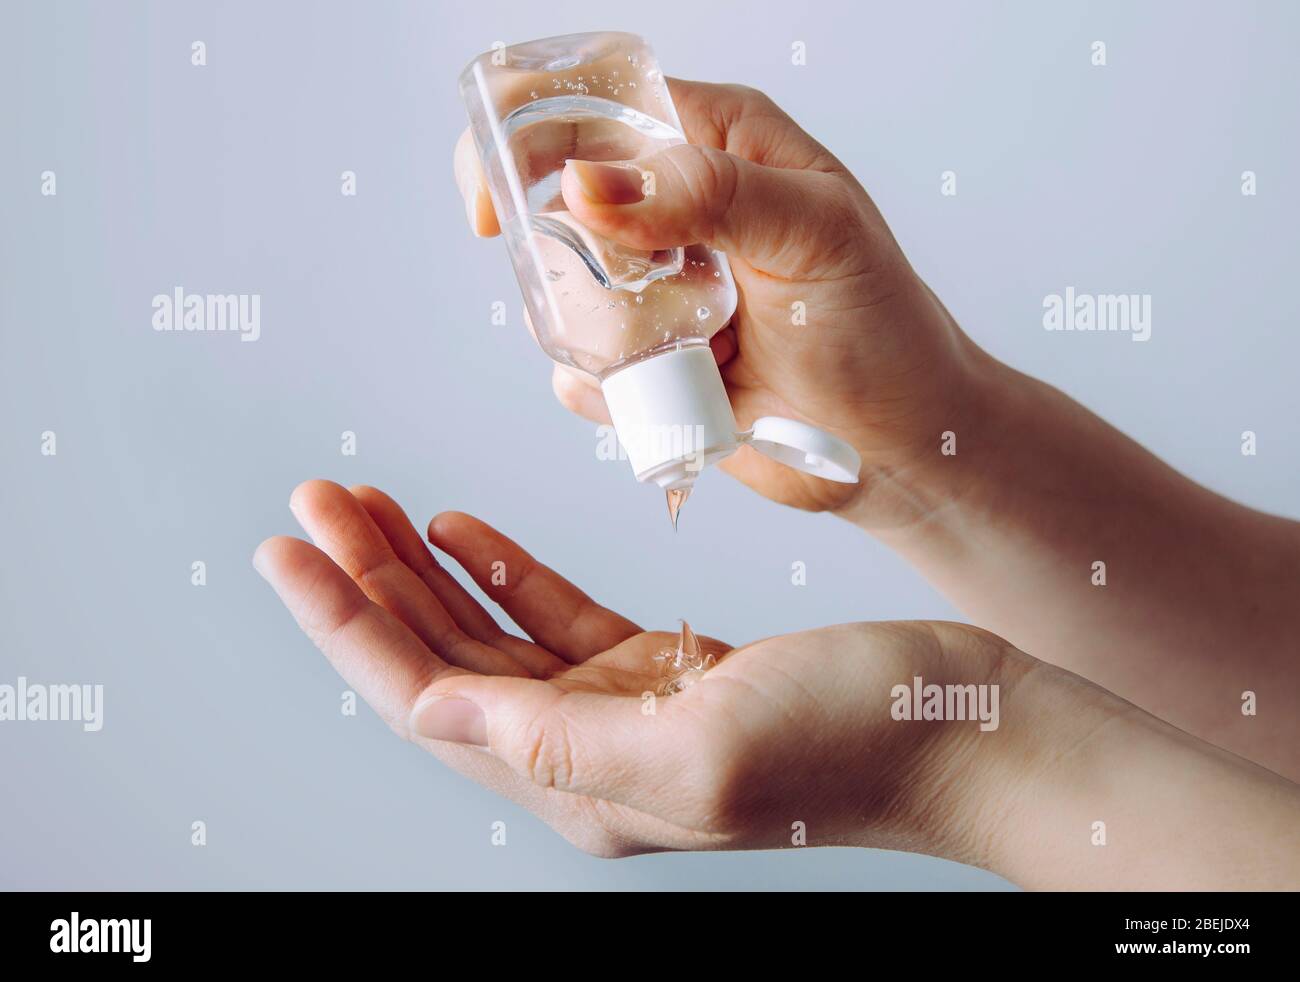 Nahaufnahme der Frau mit einem kleinen tragbaren antibakteriellen Handdesinfektionsmittel an den Händen. Stockfoto